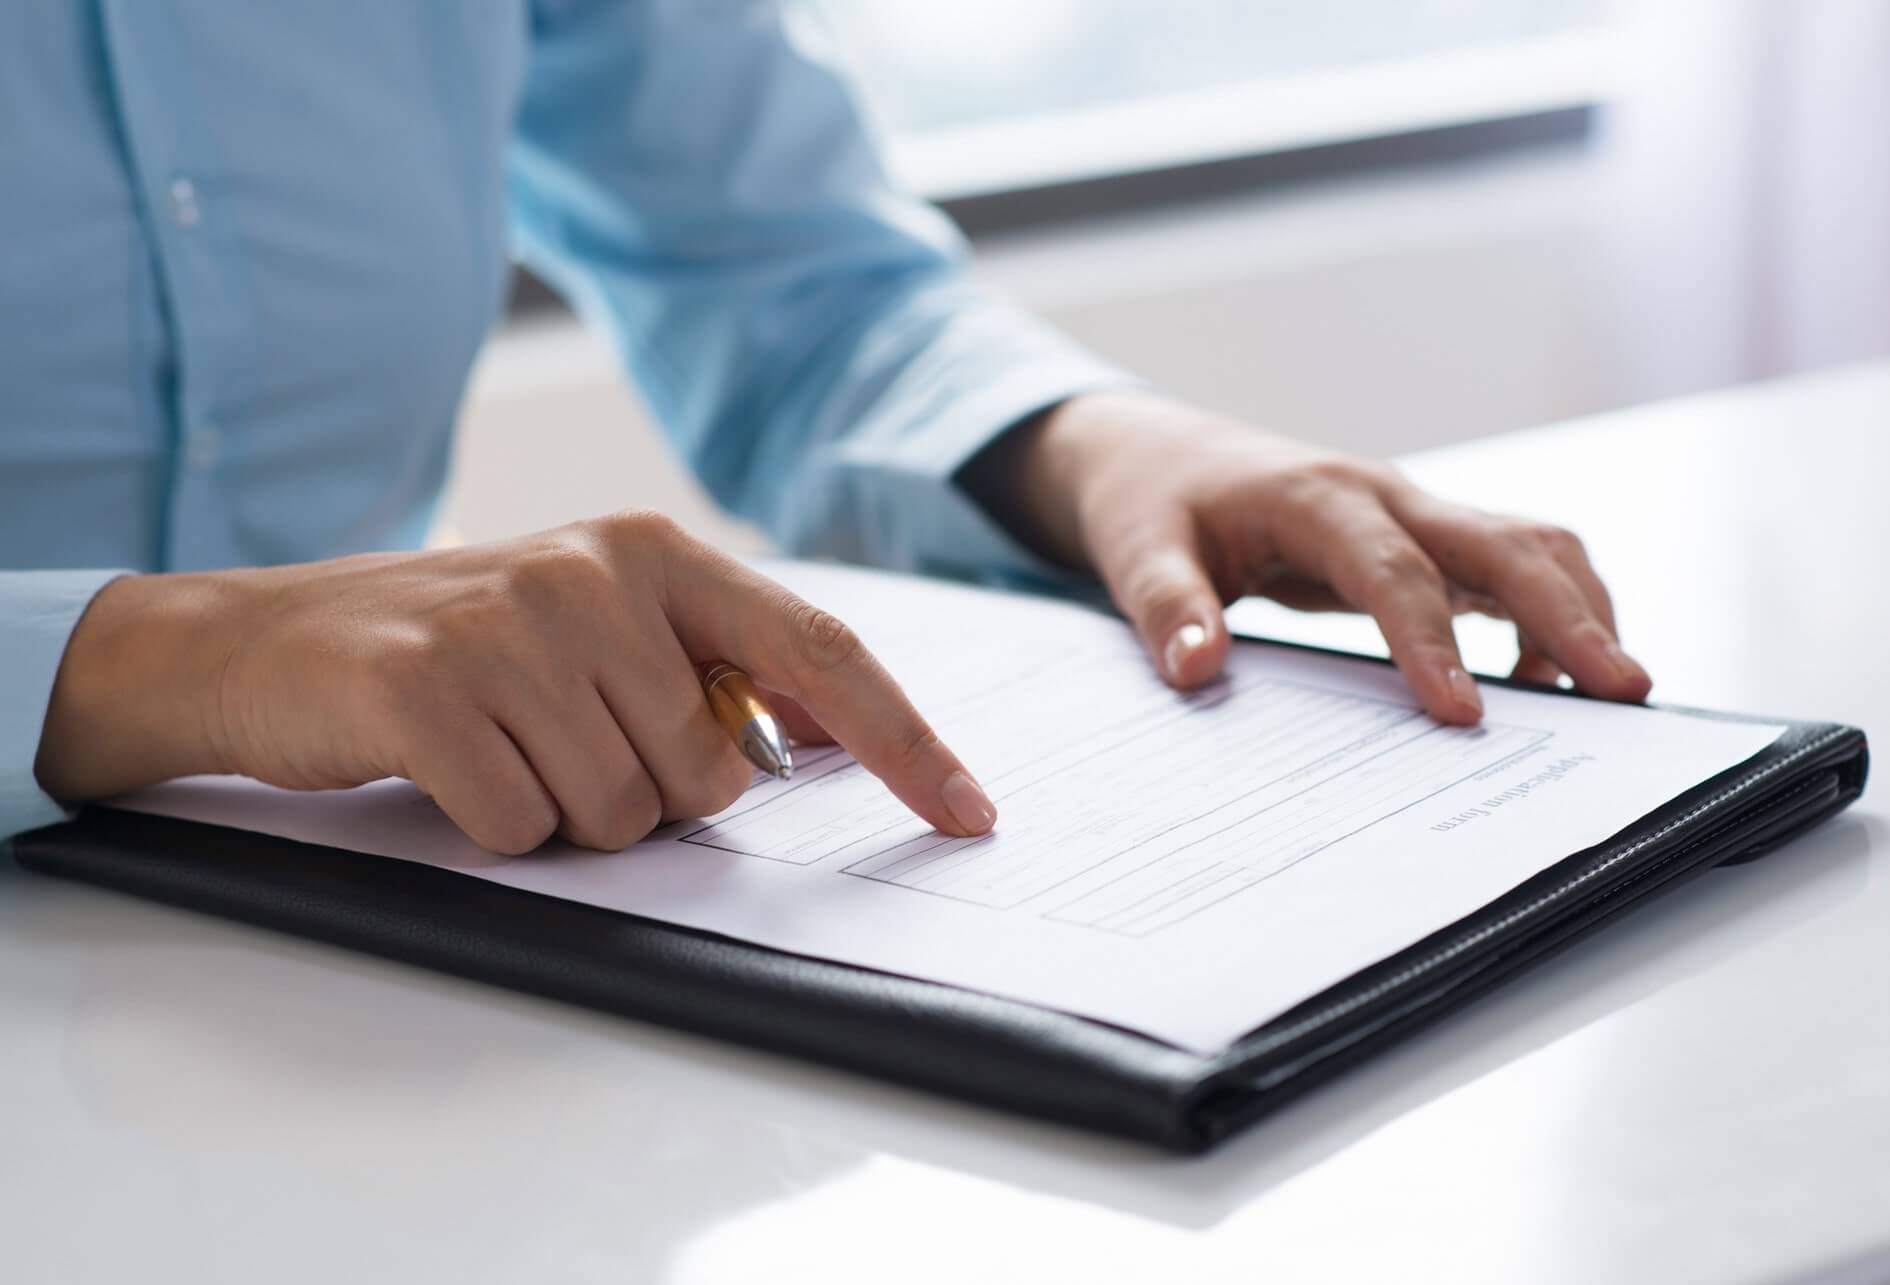 Humain consultant et vérifiant un document administratif et technique sur une table.